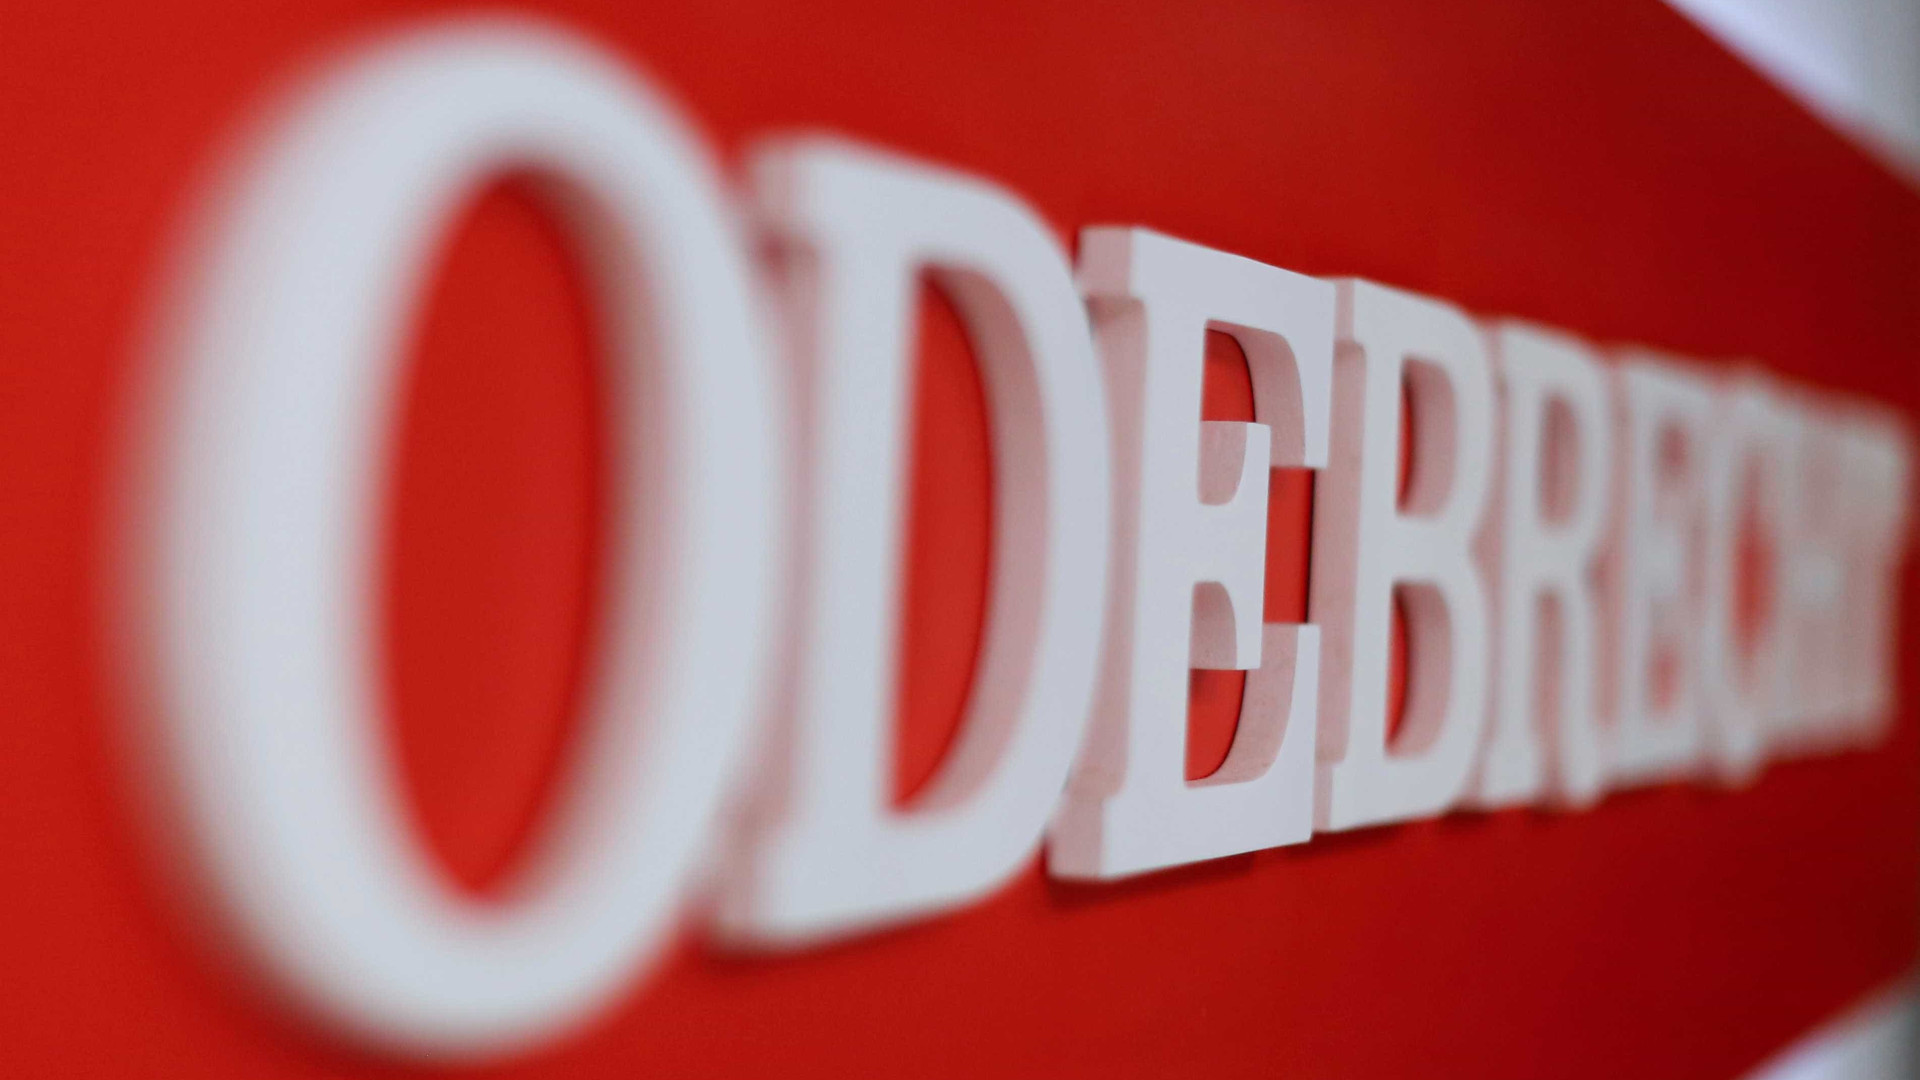 Caixa pede que Justiça decrete a falência do grupo Odebrecht